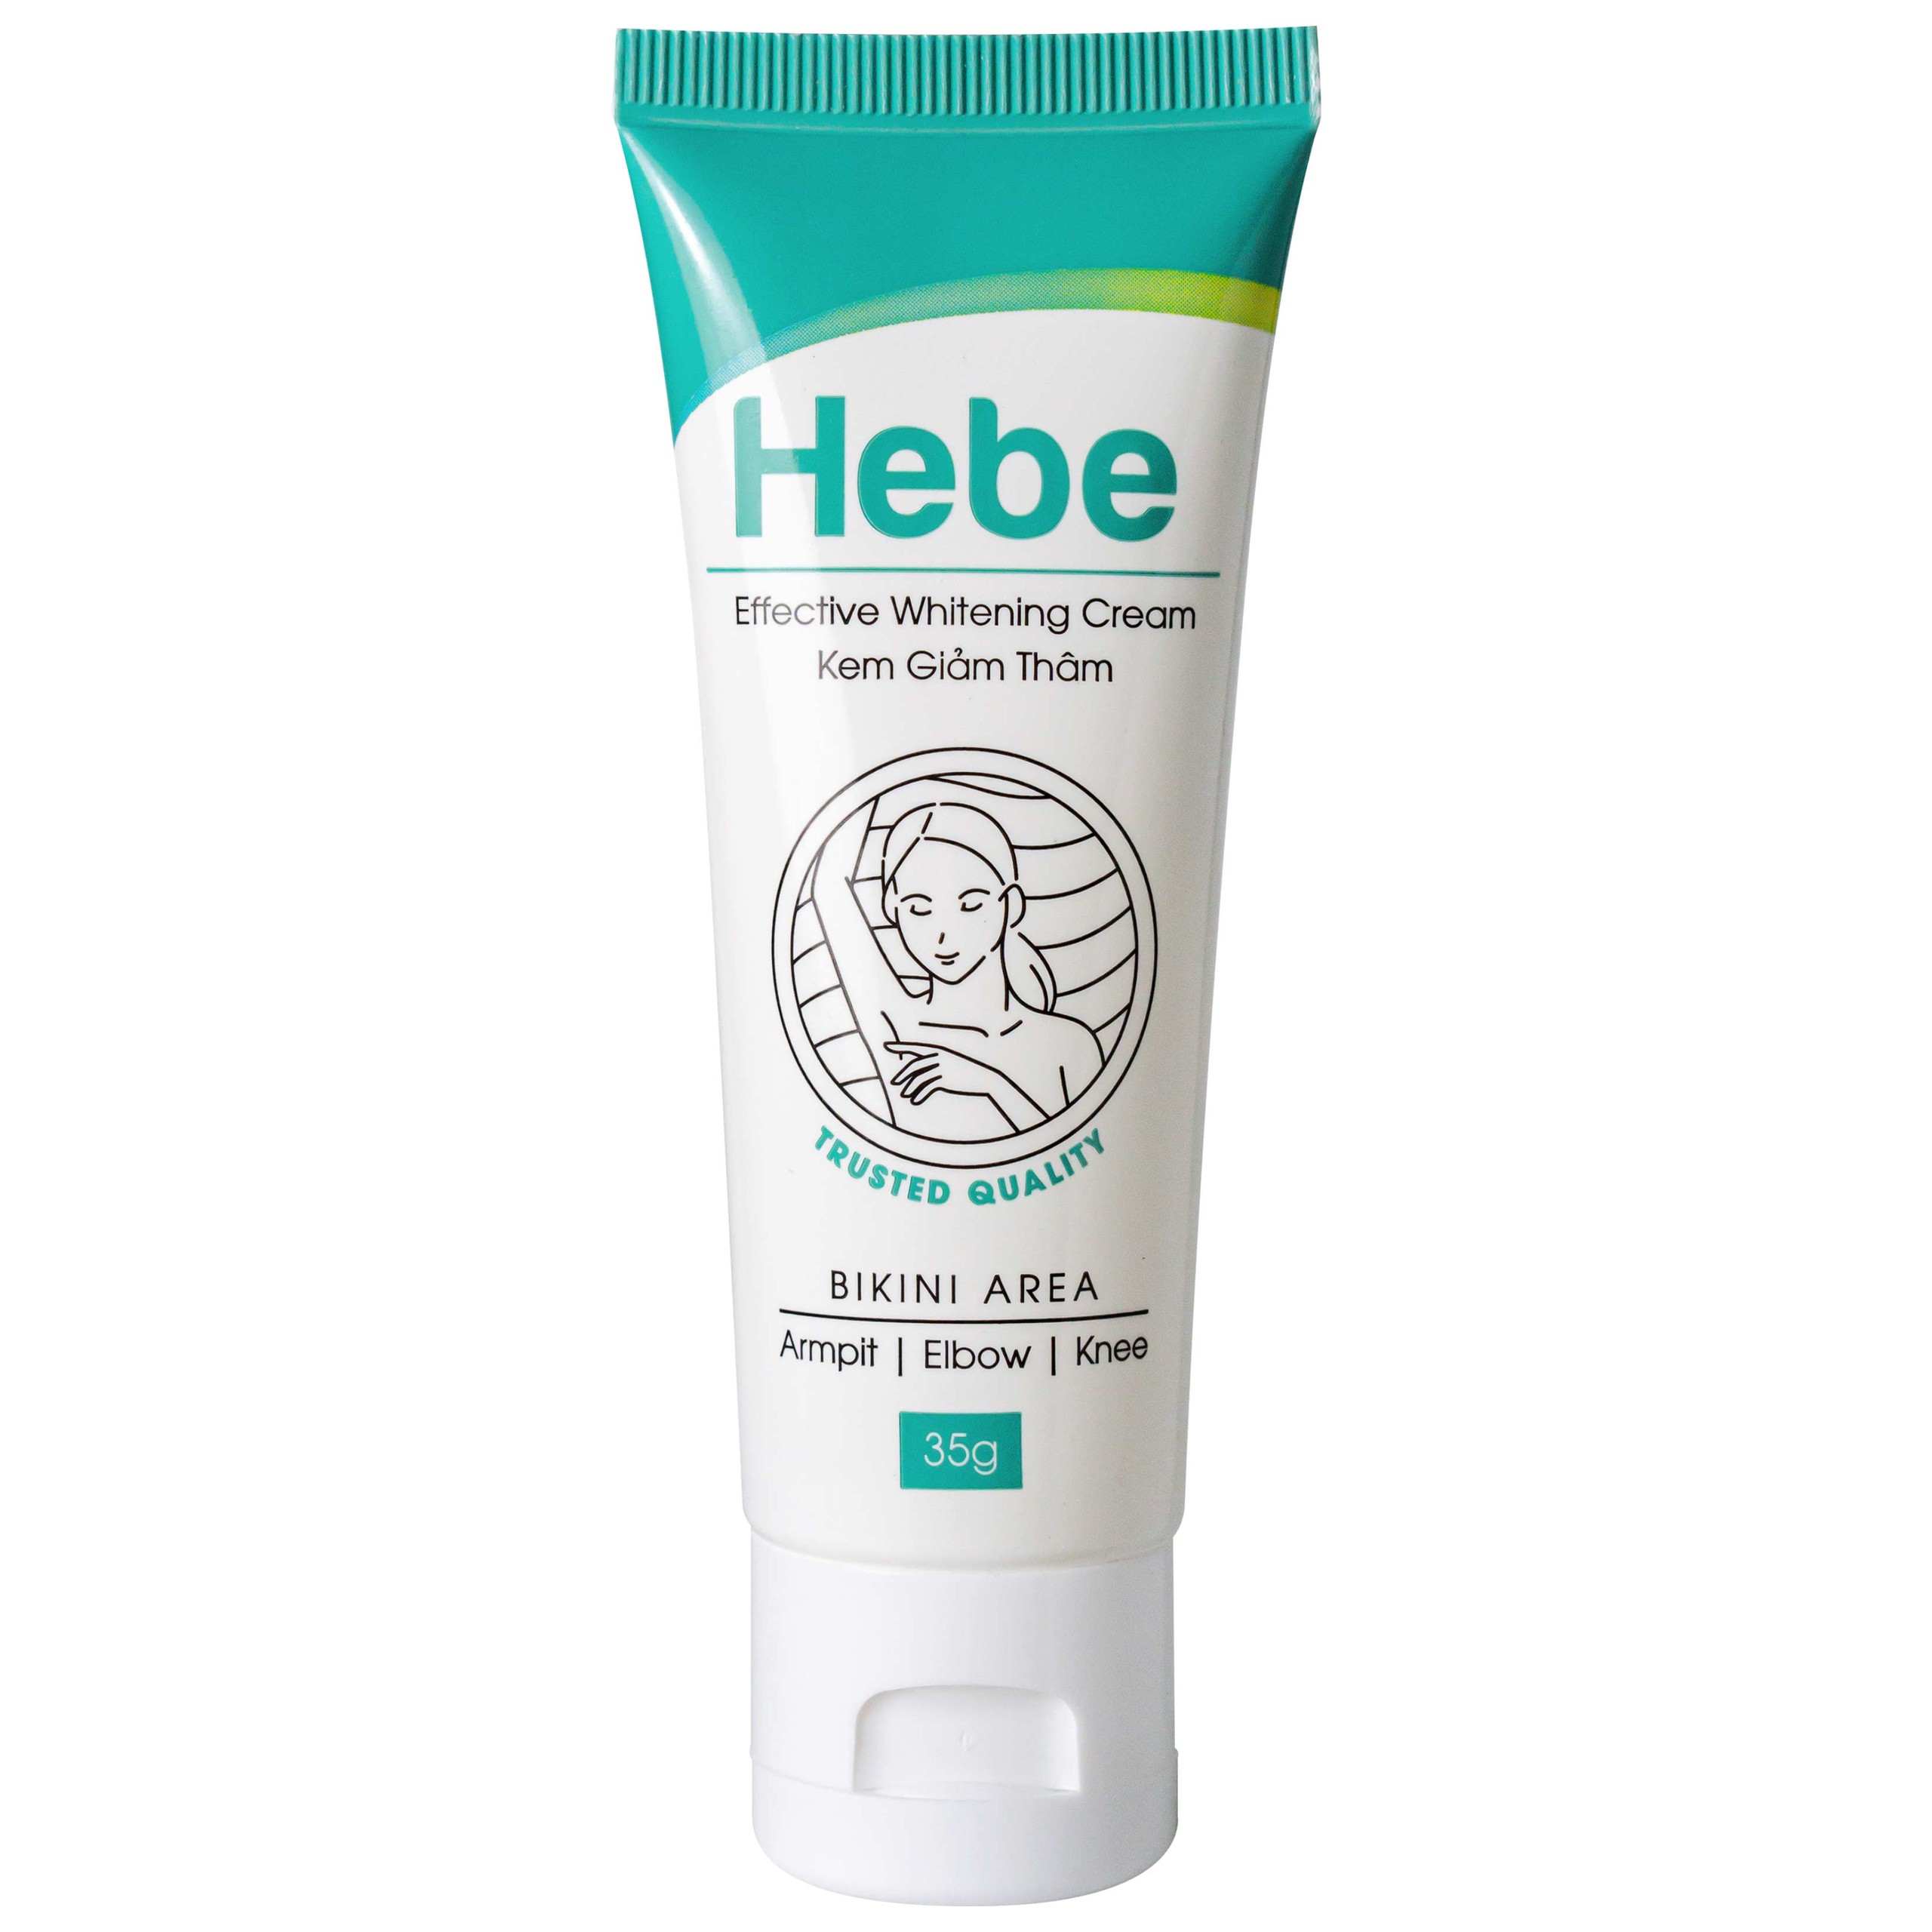 Kem giảm thâm Hebe Effective Whitening Cream La Beaute hỗ trợ giảm thâm vùng nách, vùng kín (35g)